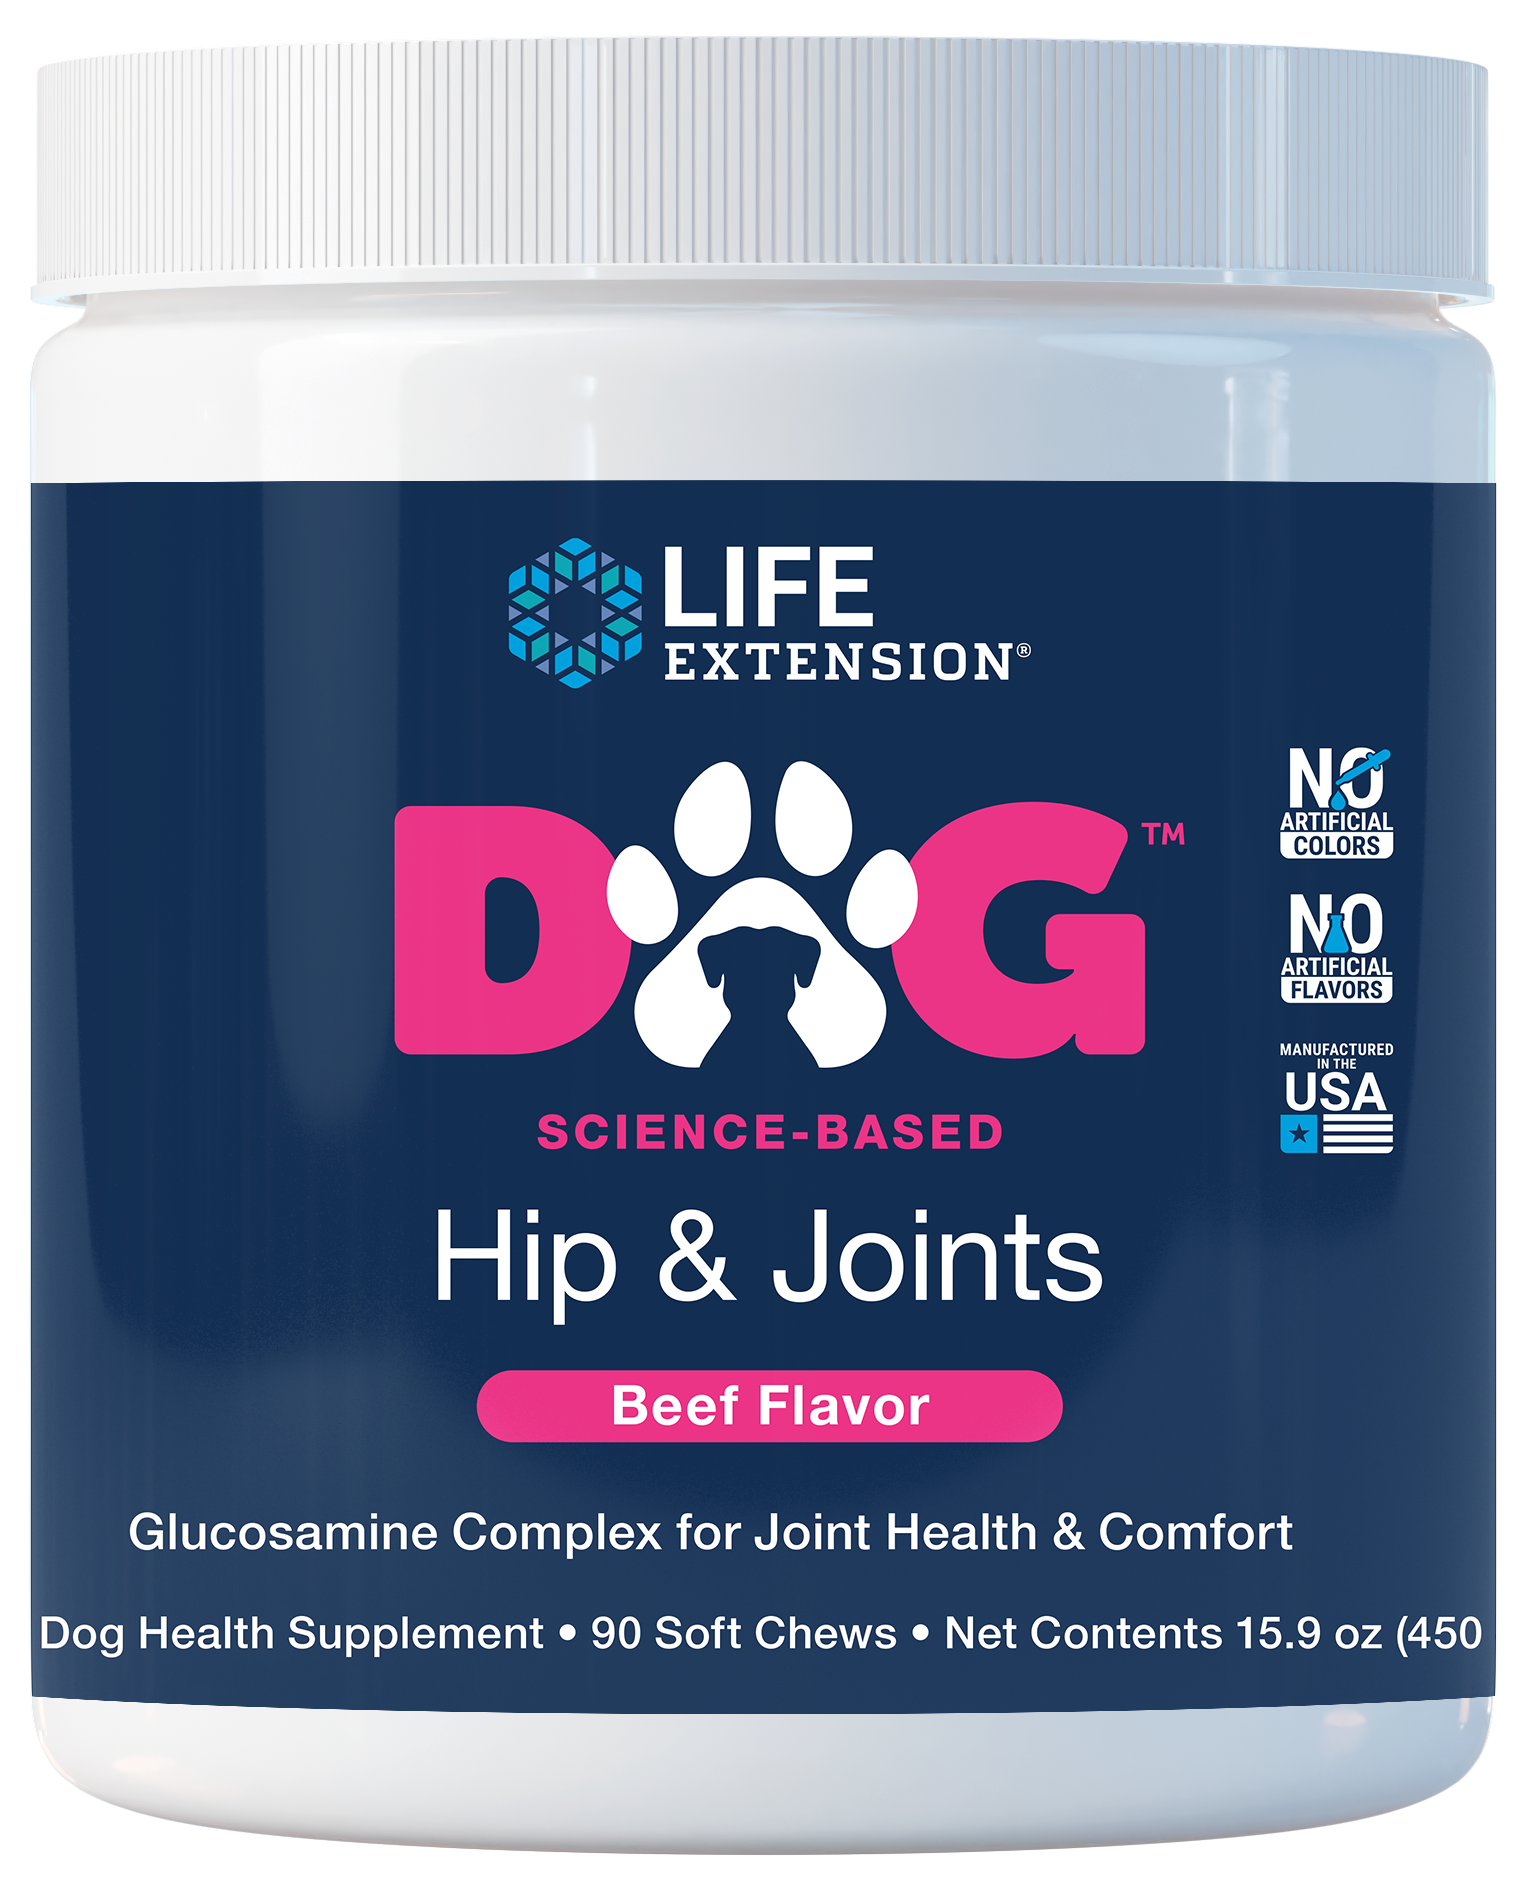 DOG Hip & Joints, 90 masticables suaves con sabor a carne, glucosamina para la salud y comodidad de las articulaciones, MSM y PEA para combatir las molestias